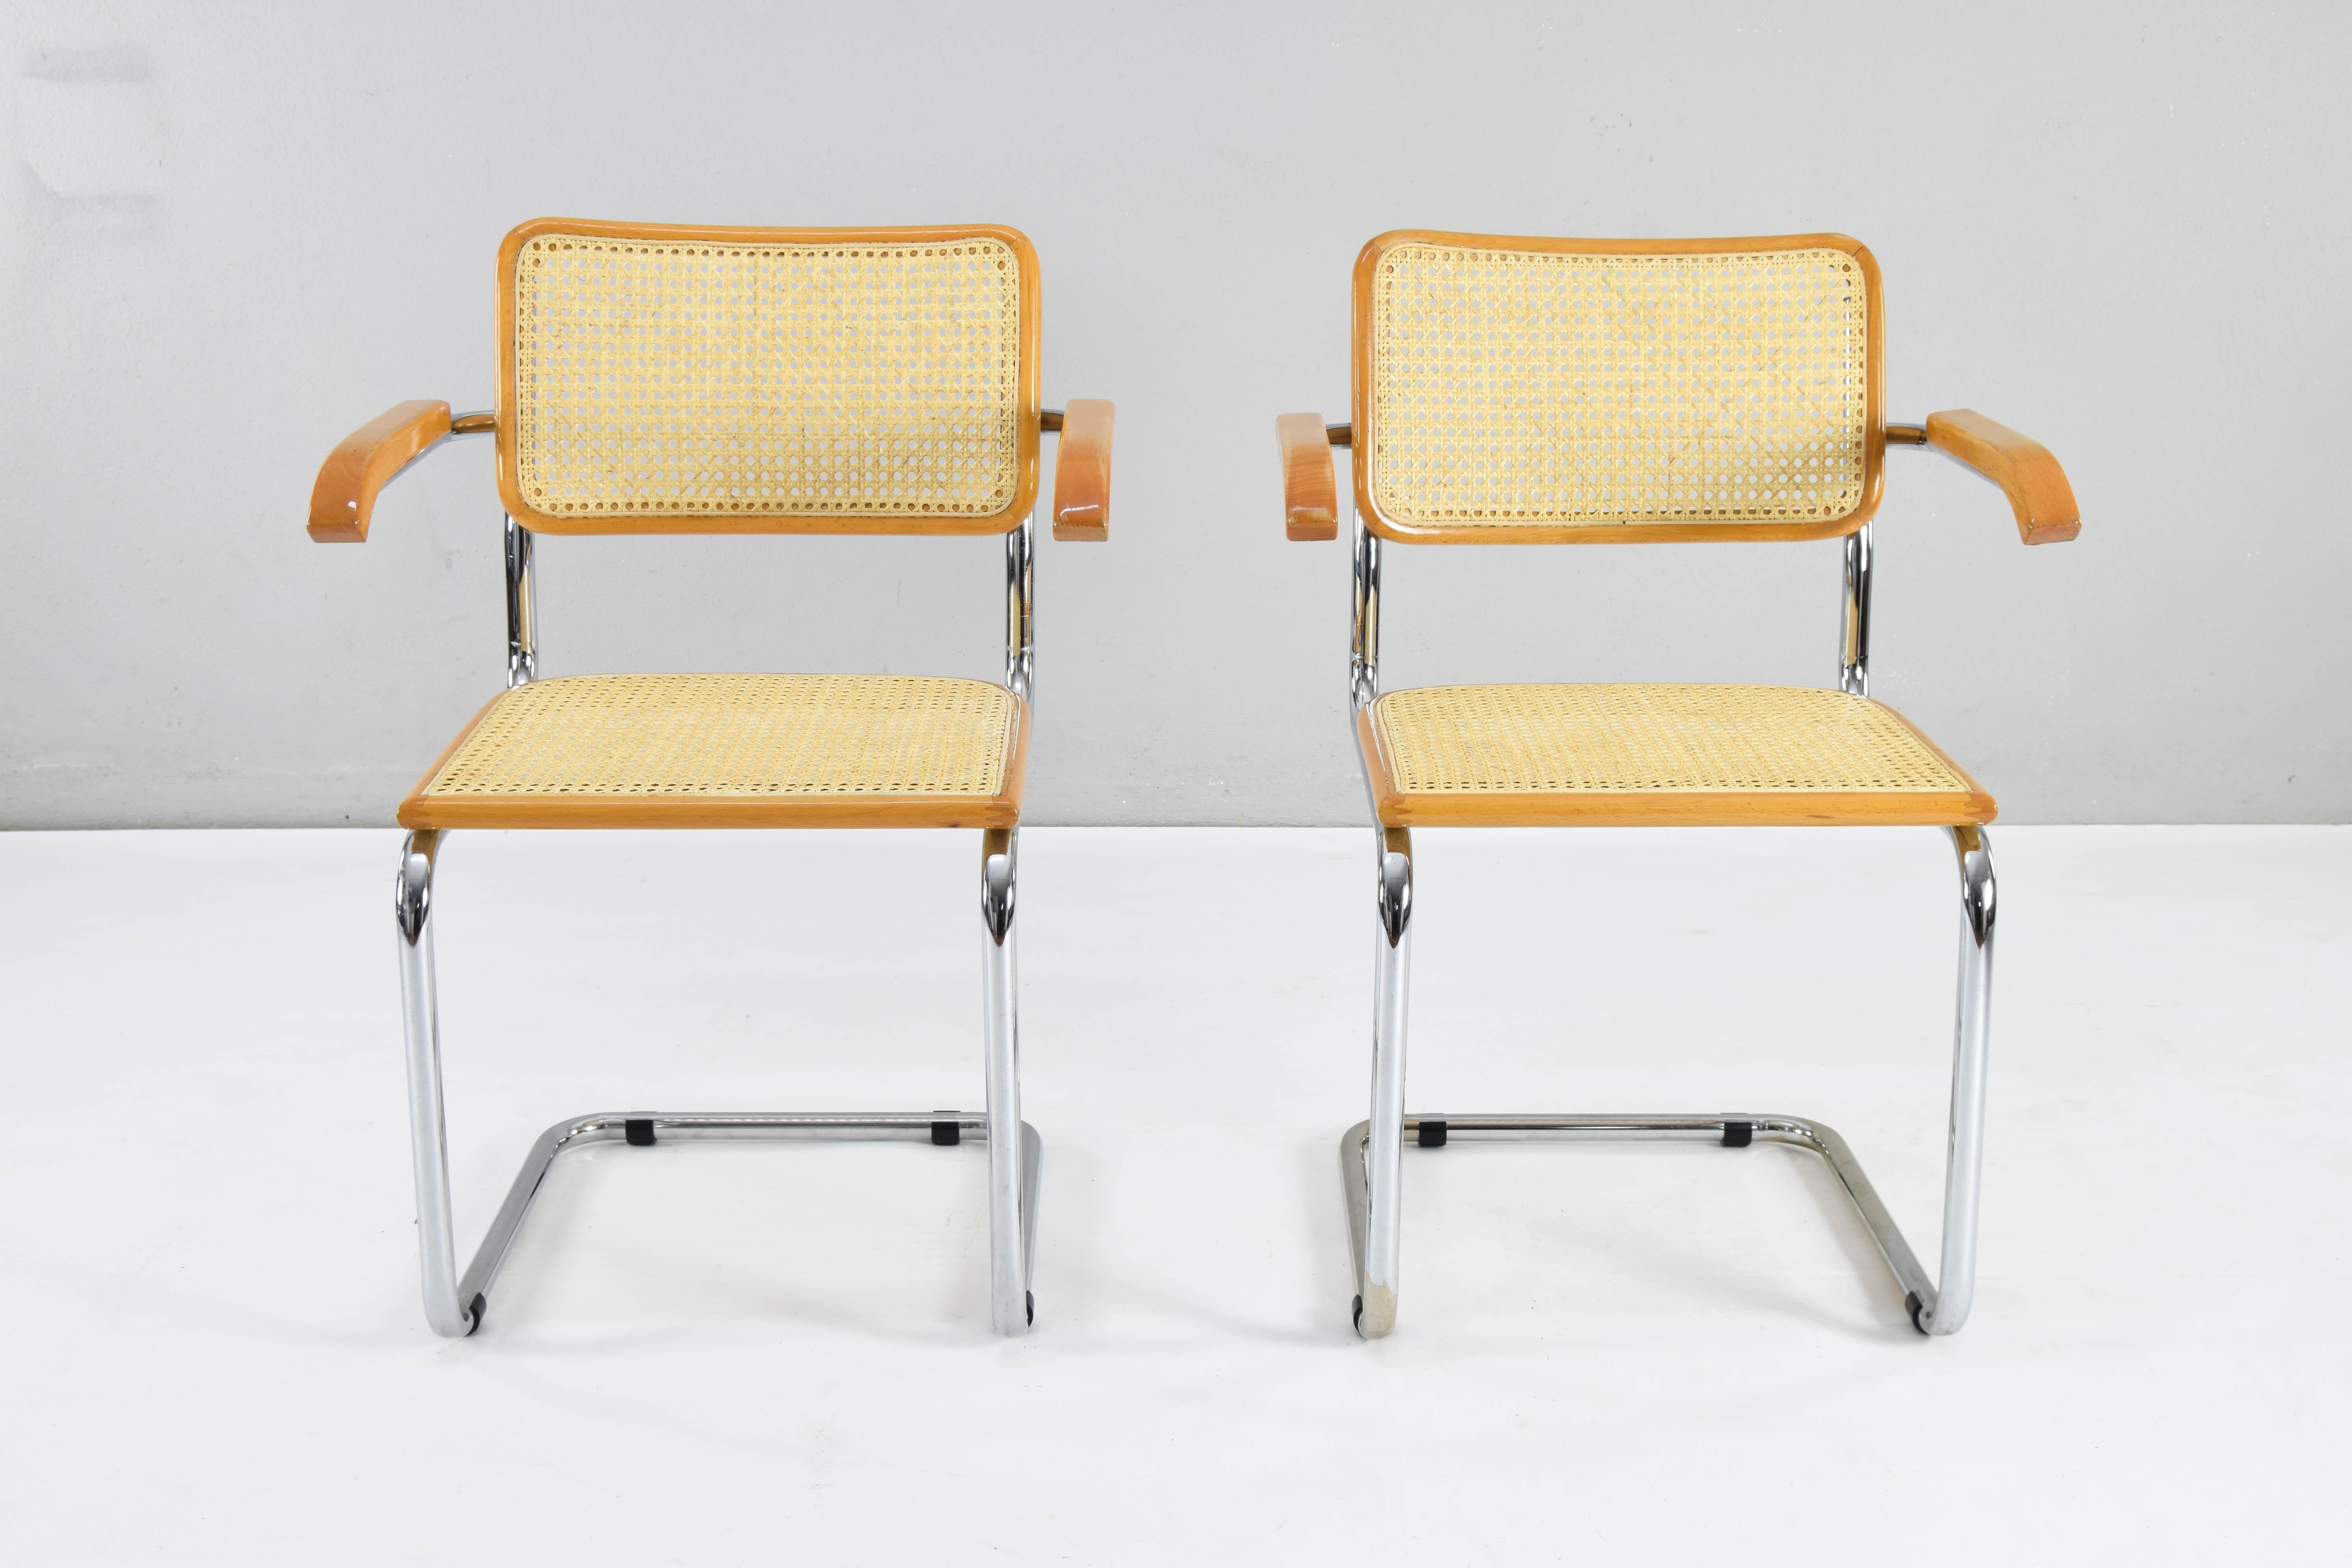 Ensemble de deux chaises Cesca modèle B64, avec accoudoirs. Structure en tube d'acier chromé, bois de hêtre et grille viennoise naturelle. 
Structure tubulaire chromée avec des zones d'usure au bas de certaines d'entre elles mais en bon état.
Les